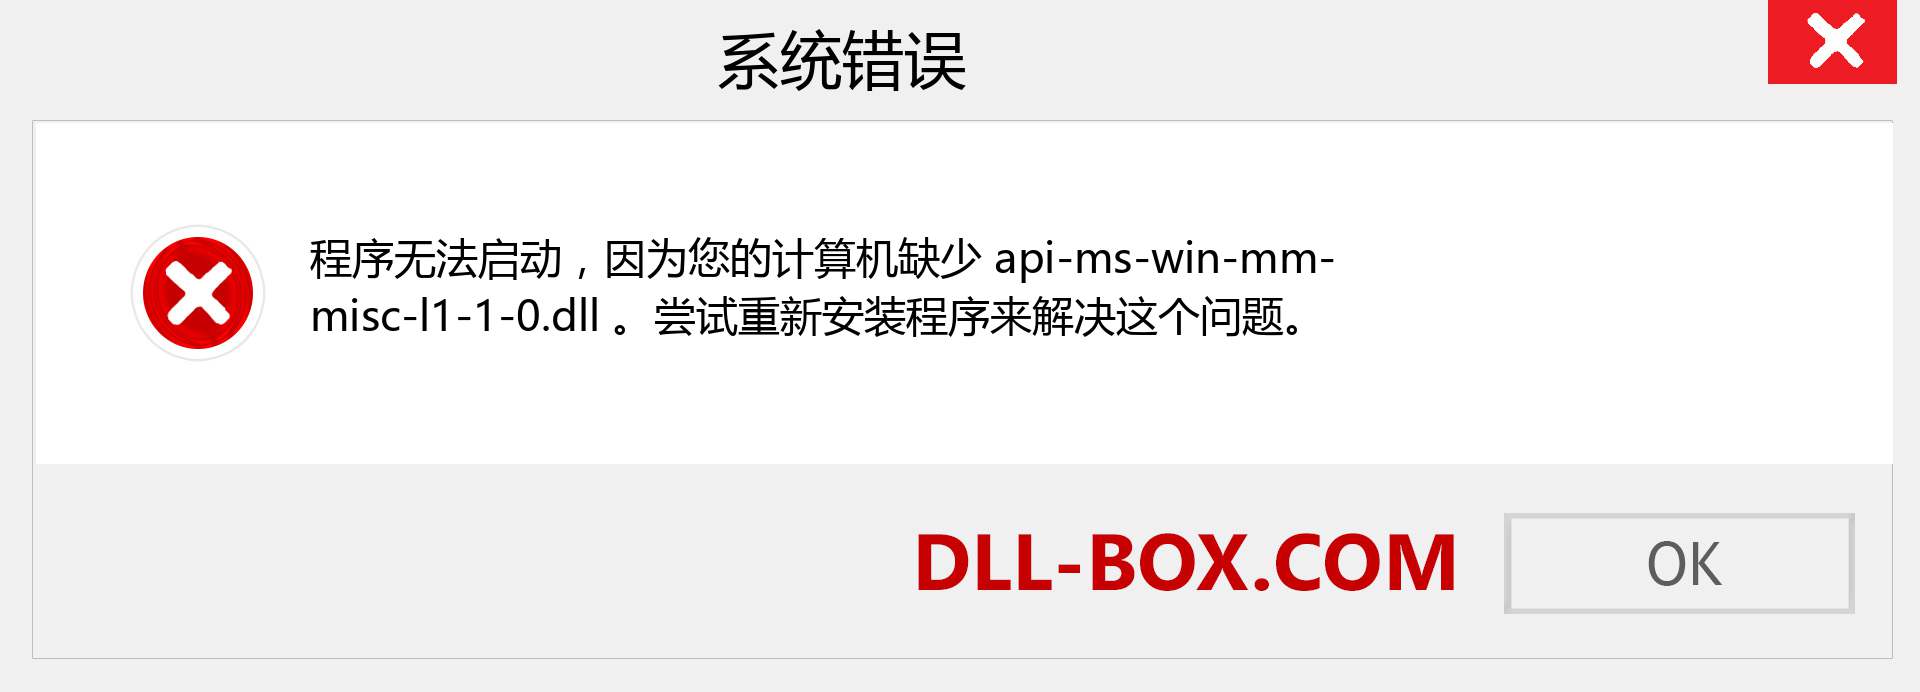 api-ms-win-mm-misc-l1-1-0.dll 文件丢失？。 适用于 Windows 7、8、10 的下载 - 修复 Windows、照片、图像上的 api-ms-win-mm-misc-l1-1-0 dll 丢失错误